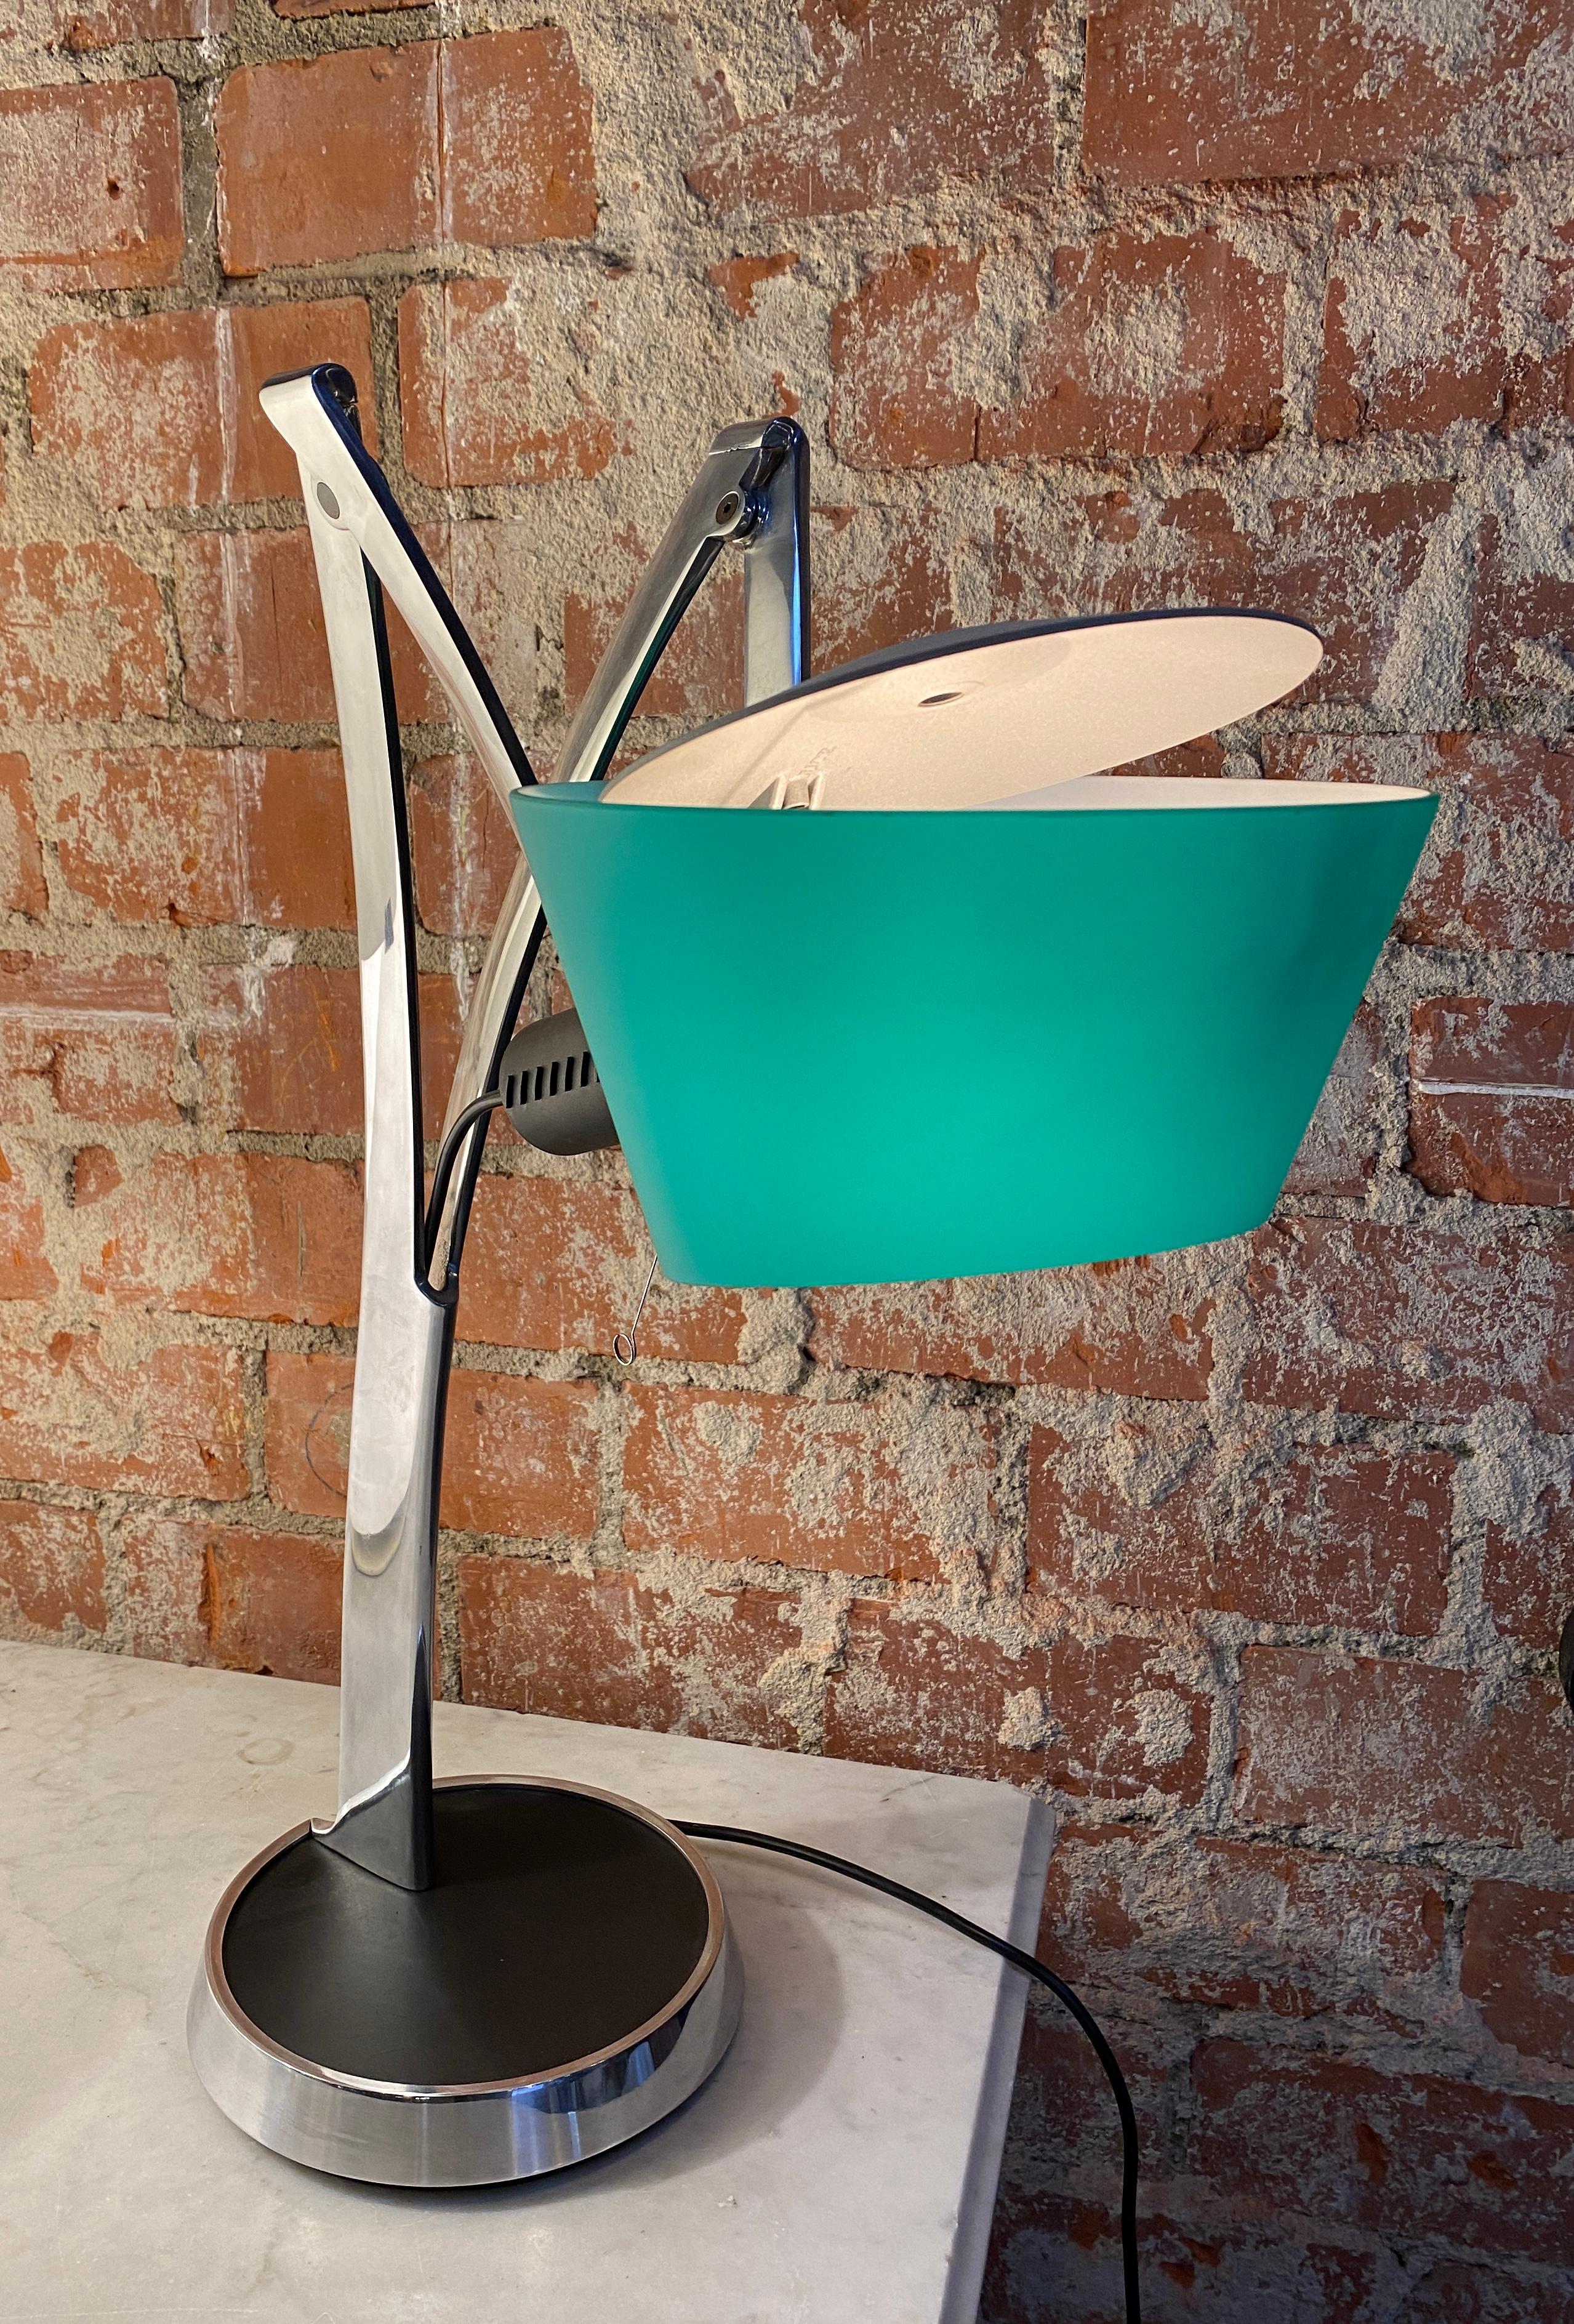 Tischlampe attribuite zu Fontana Arte, es ist eine ziemlich seltene Lampe und in perfektem Zustand. Der Schalter lässt sich durch Berühren des kleinen Metalldrahtes betätigen, der auf einem der Fotos und im Video zu sehen ist. Sowohl das grüne Glas,